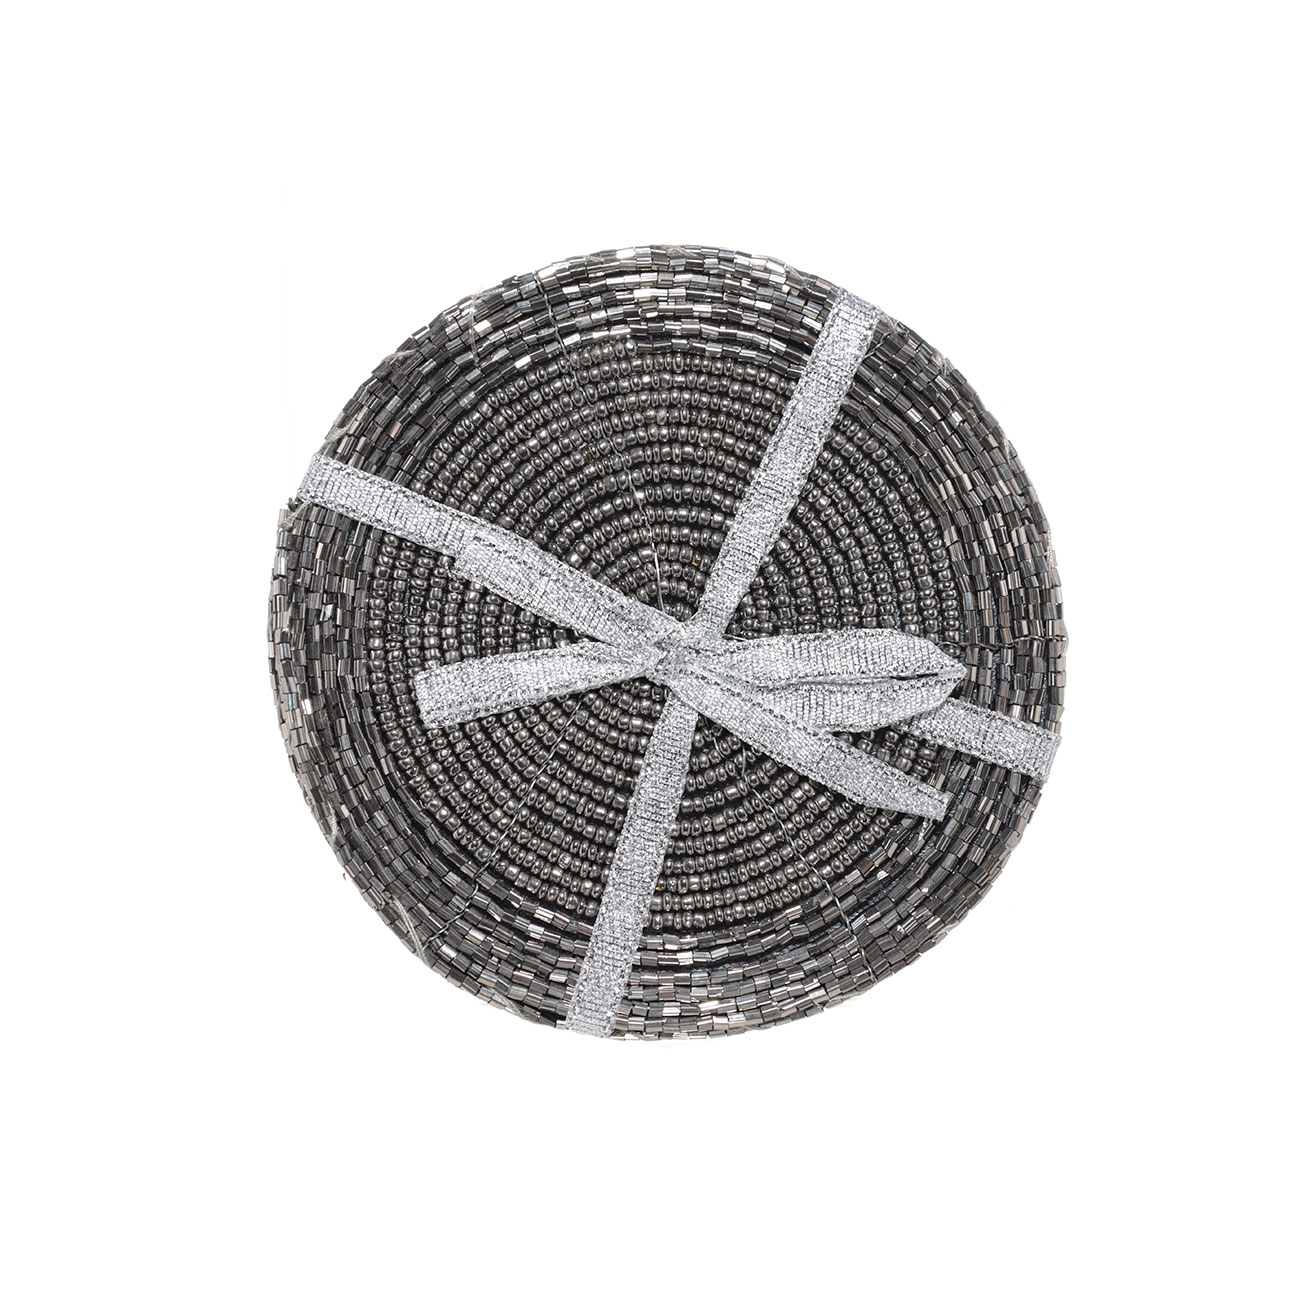 Подставка под кружку, 10 см, 2 шт, бисер, круглая, темно-серая, Shiny beads изображение № 2